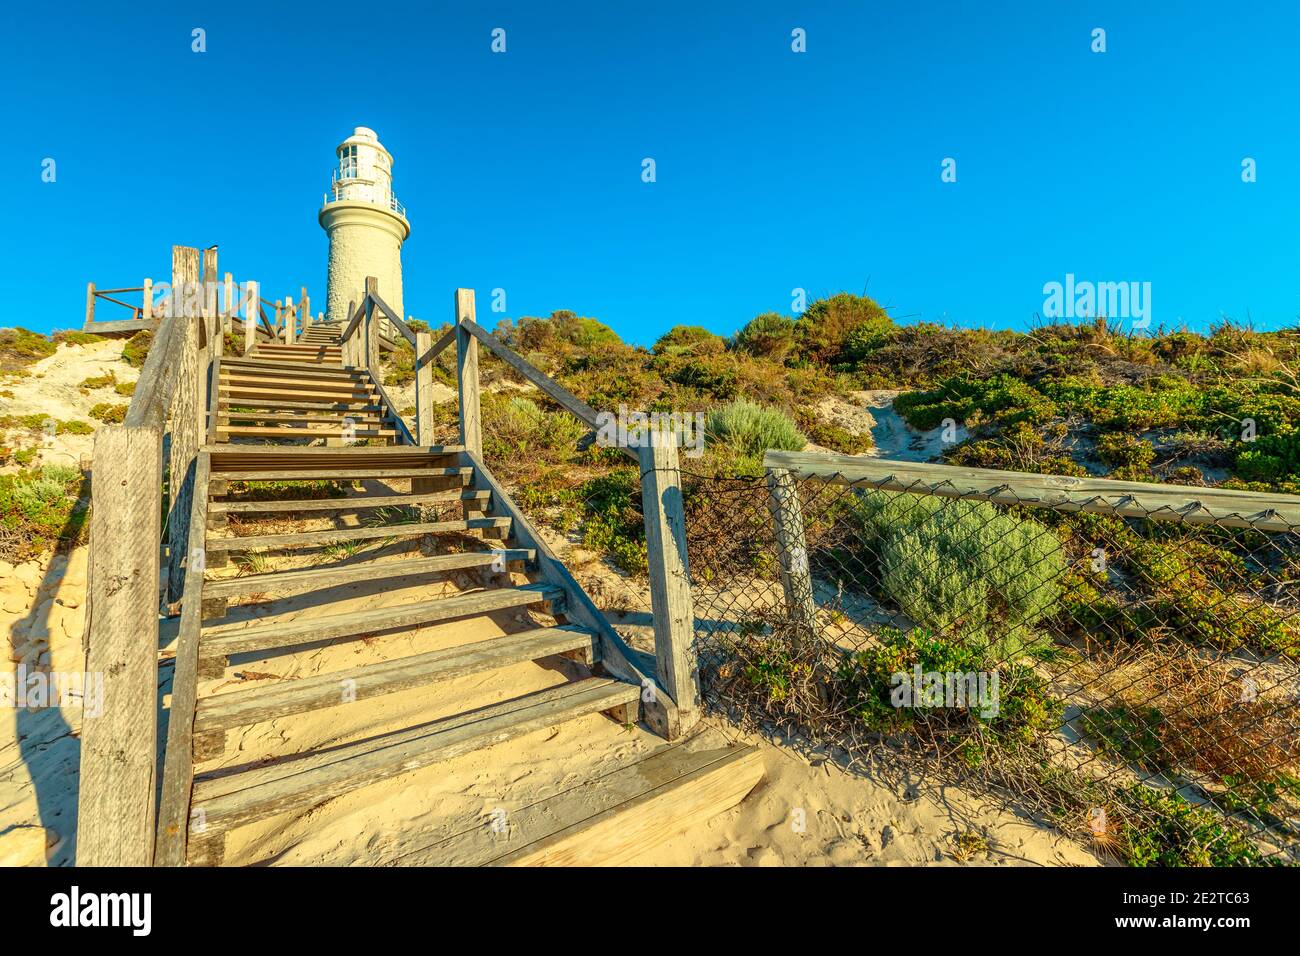 Escaliers menant au phare de Bathurst, sur la côte nord de l'île Rottnest, près de Perth, en Australie occidentale. Banque D'Images